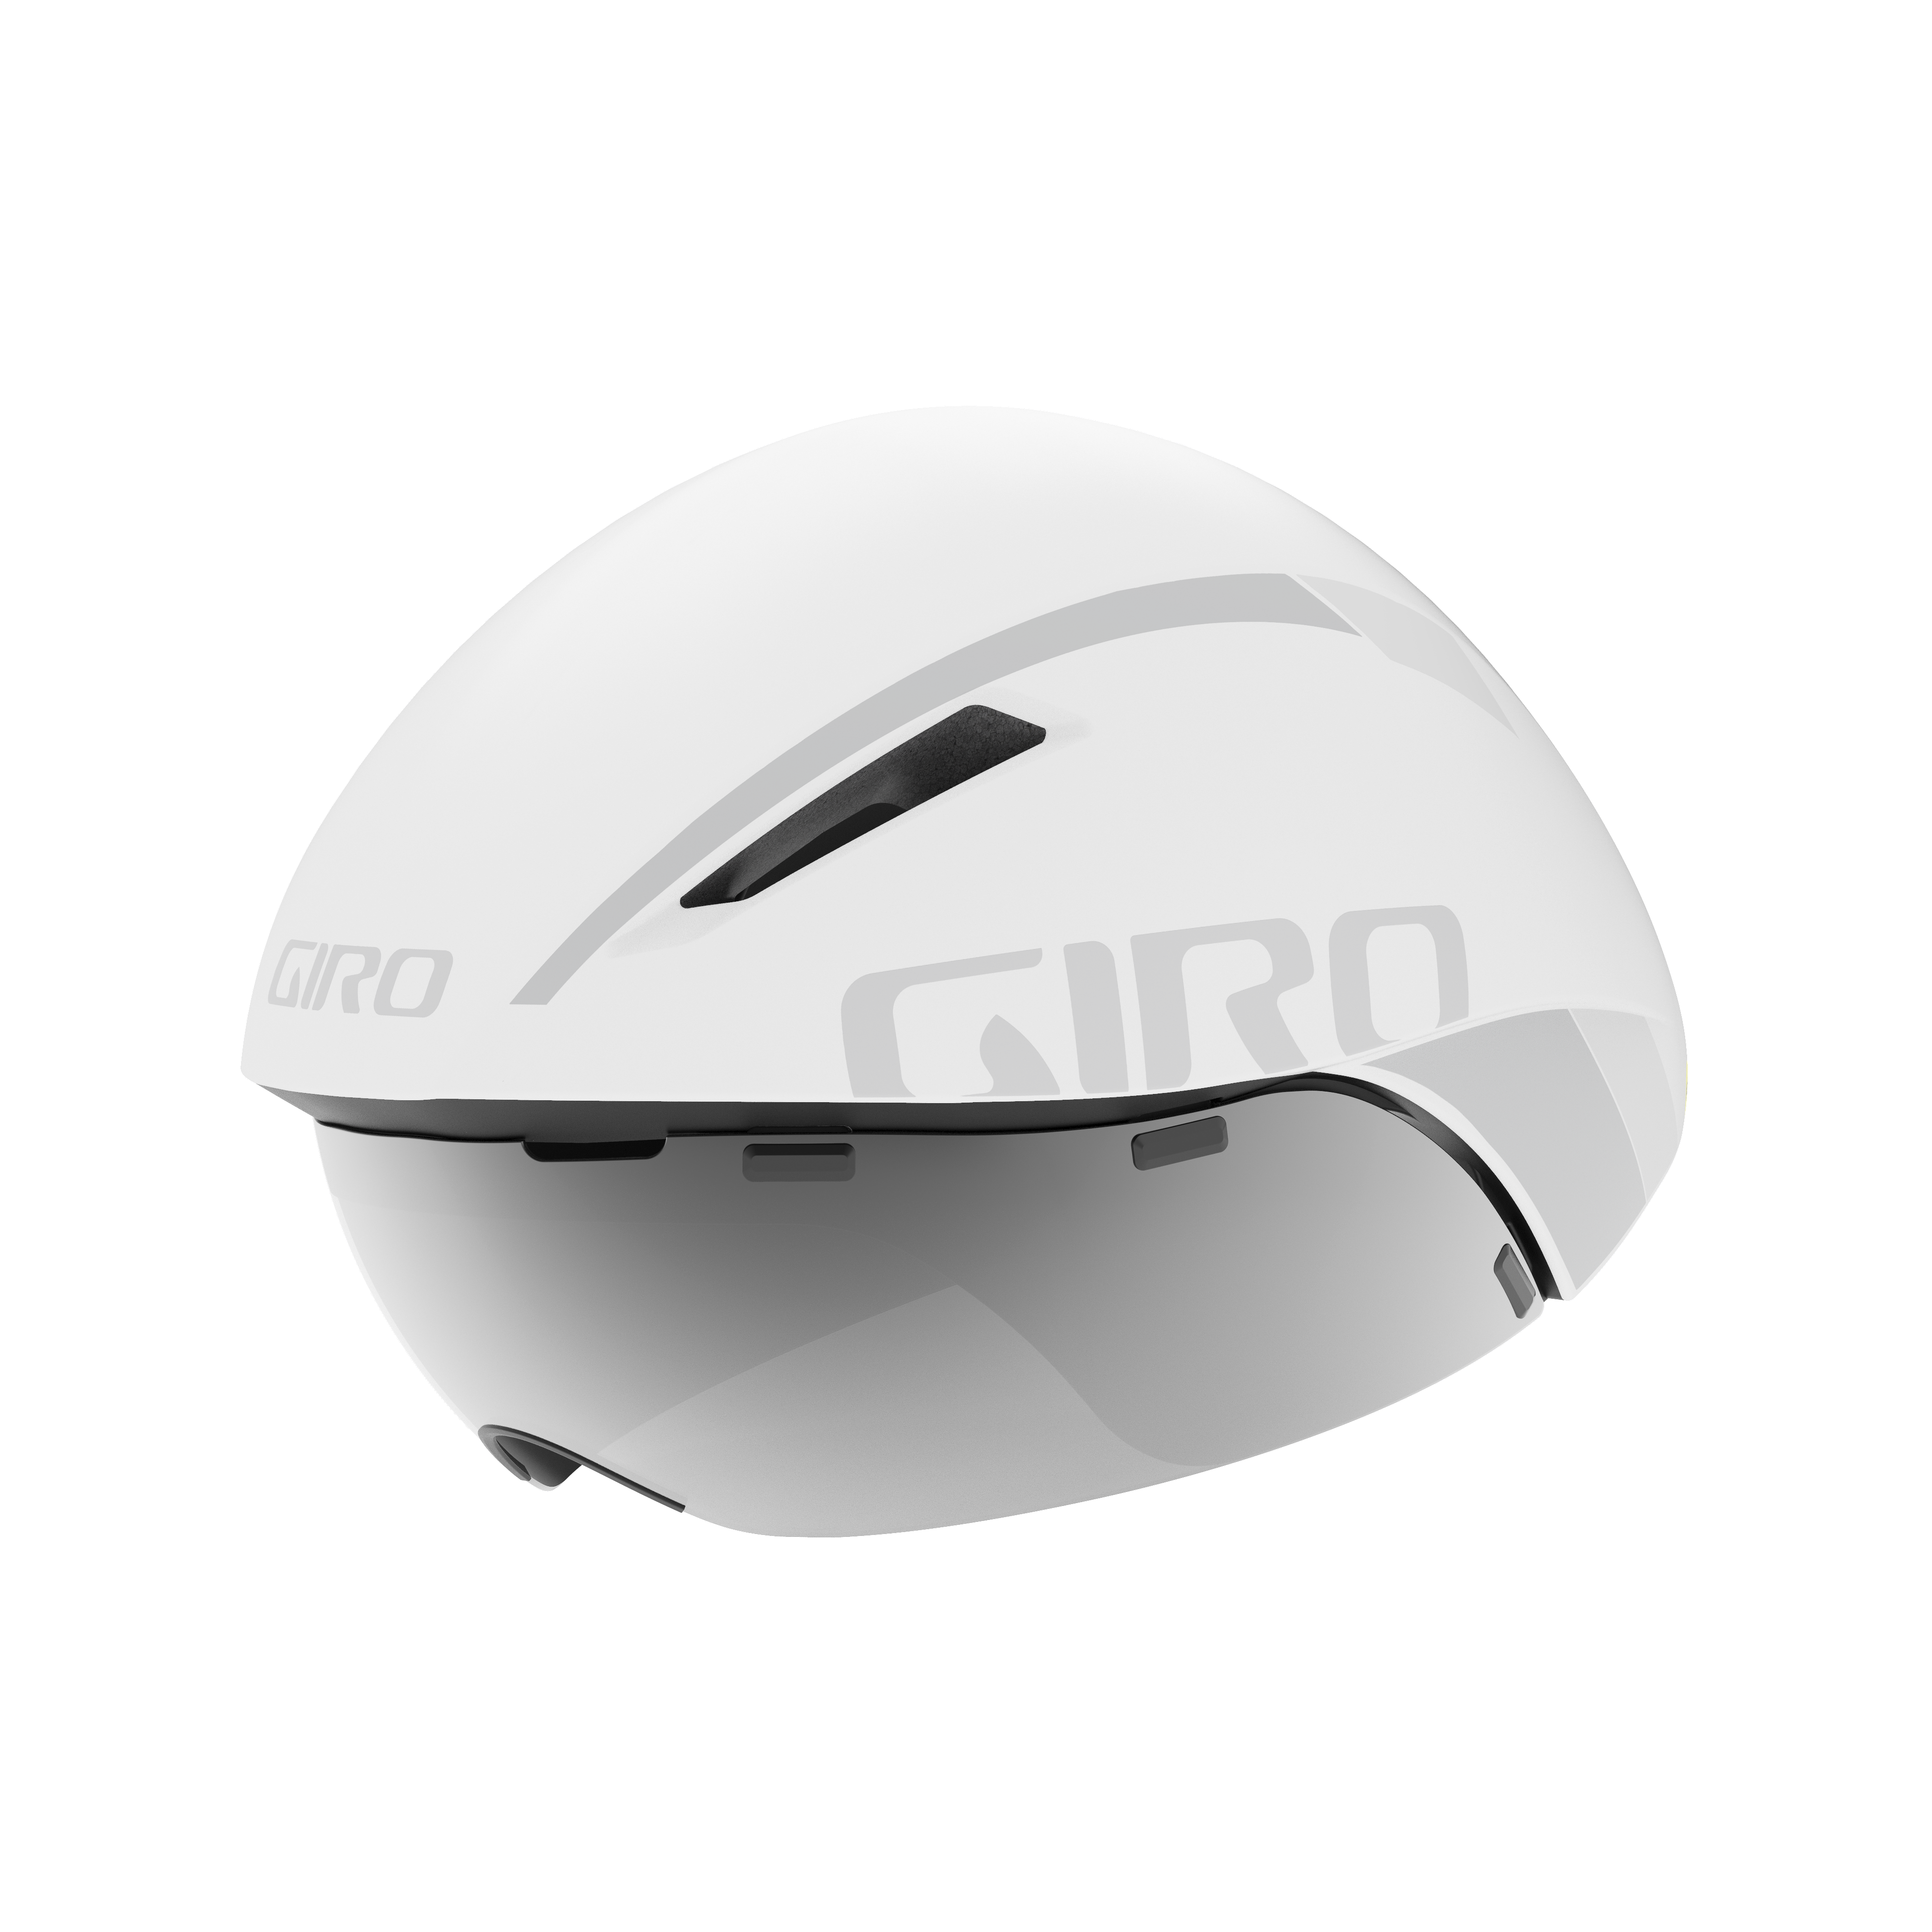 Aerohead Mips Helmet